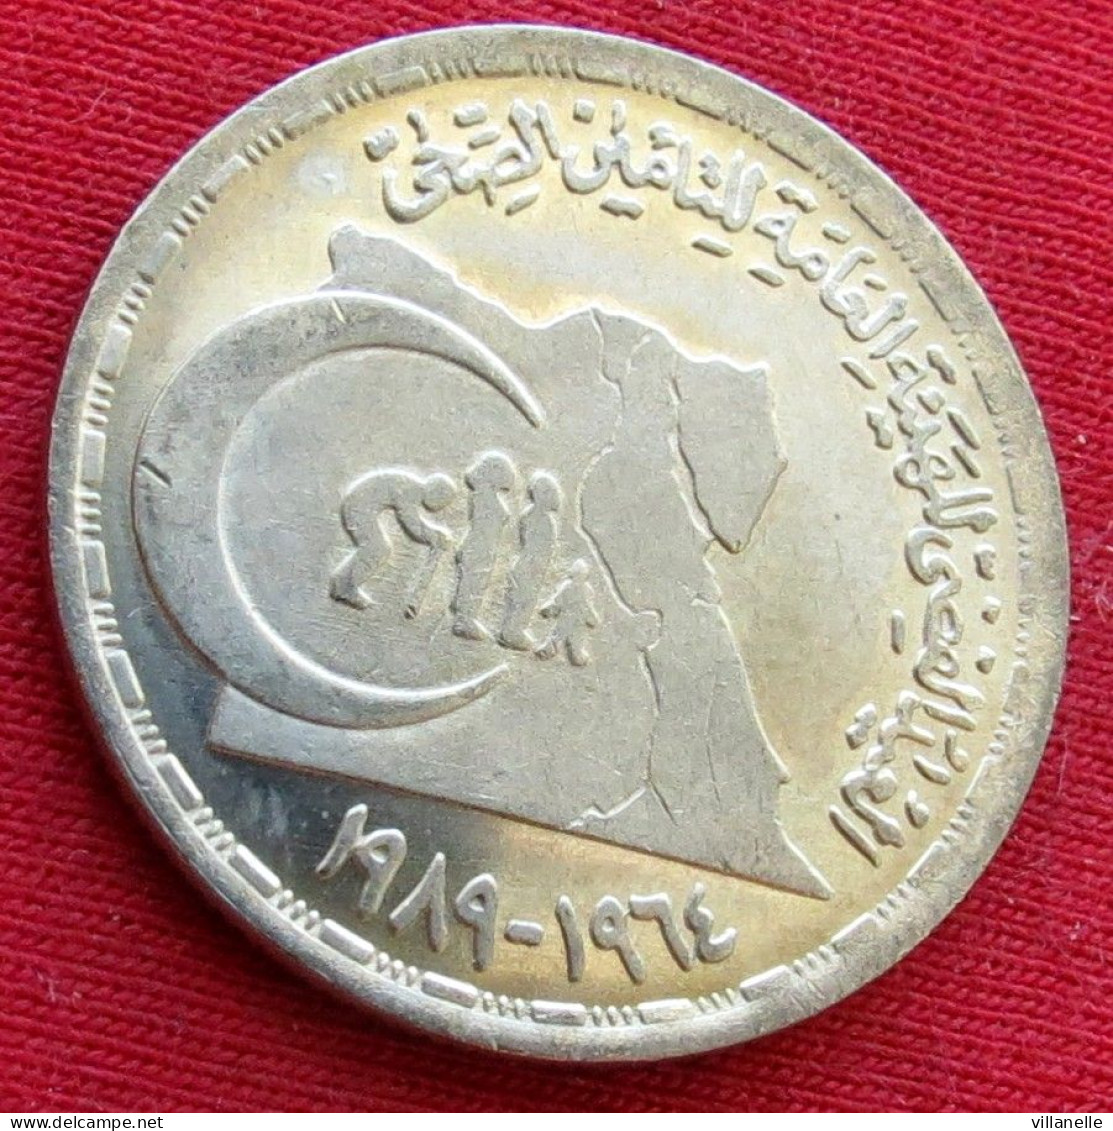 Egypt 20 Piastres 1989 Health Insurance Egipto Egypte Egito Egitto Ägypten UNC ºº - Egipto